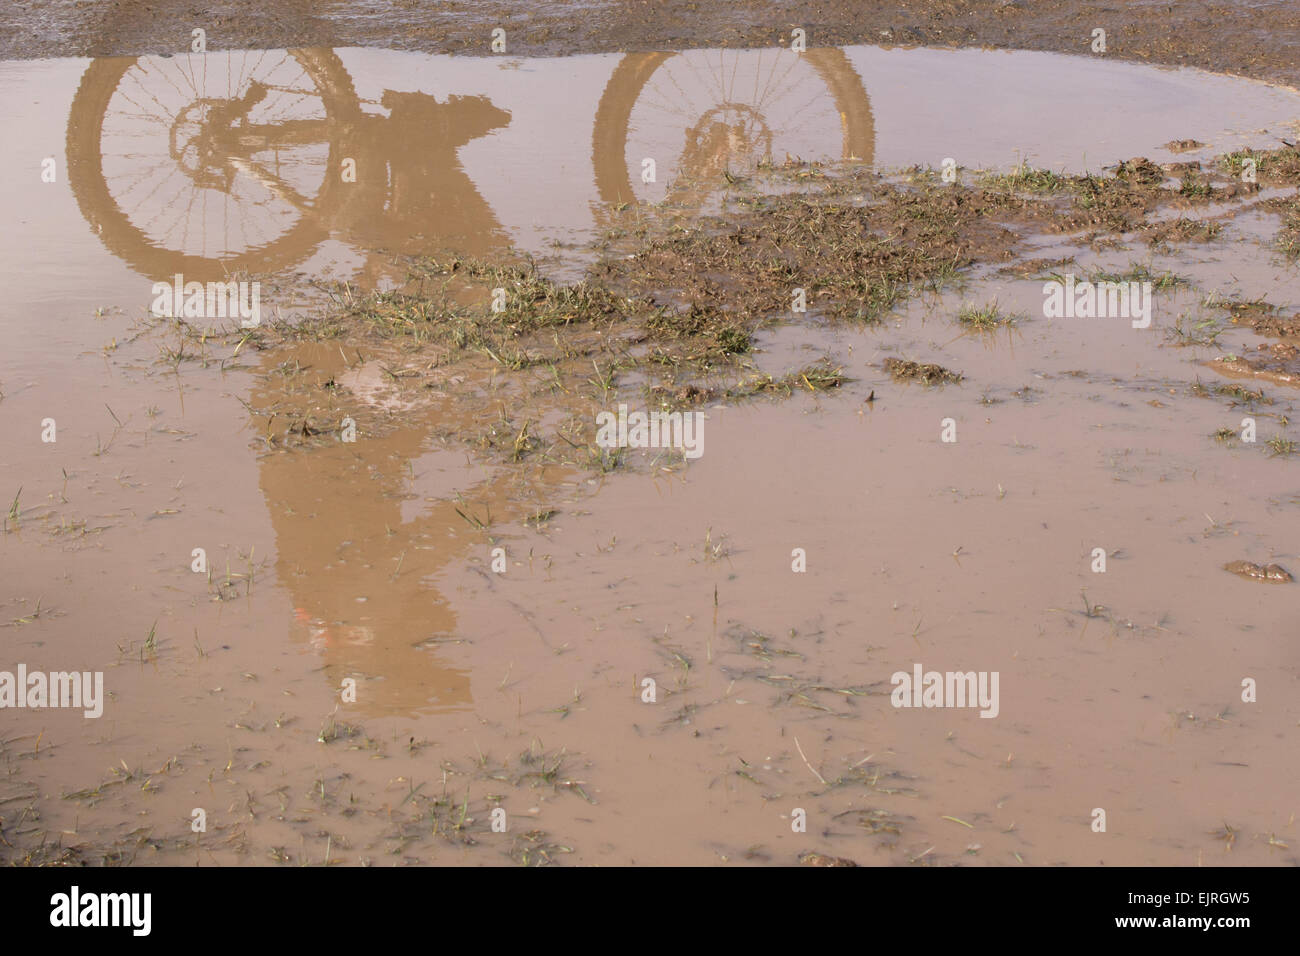 Circonscription cycliste vtt de descente reflète dans la boue flaque Banque D'Images